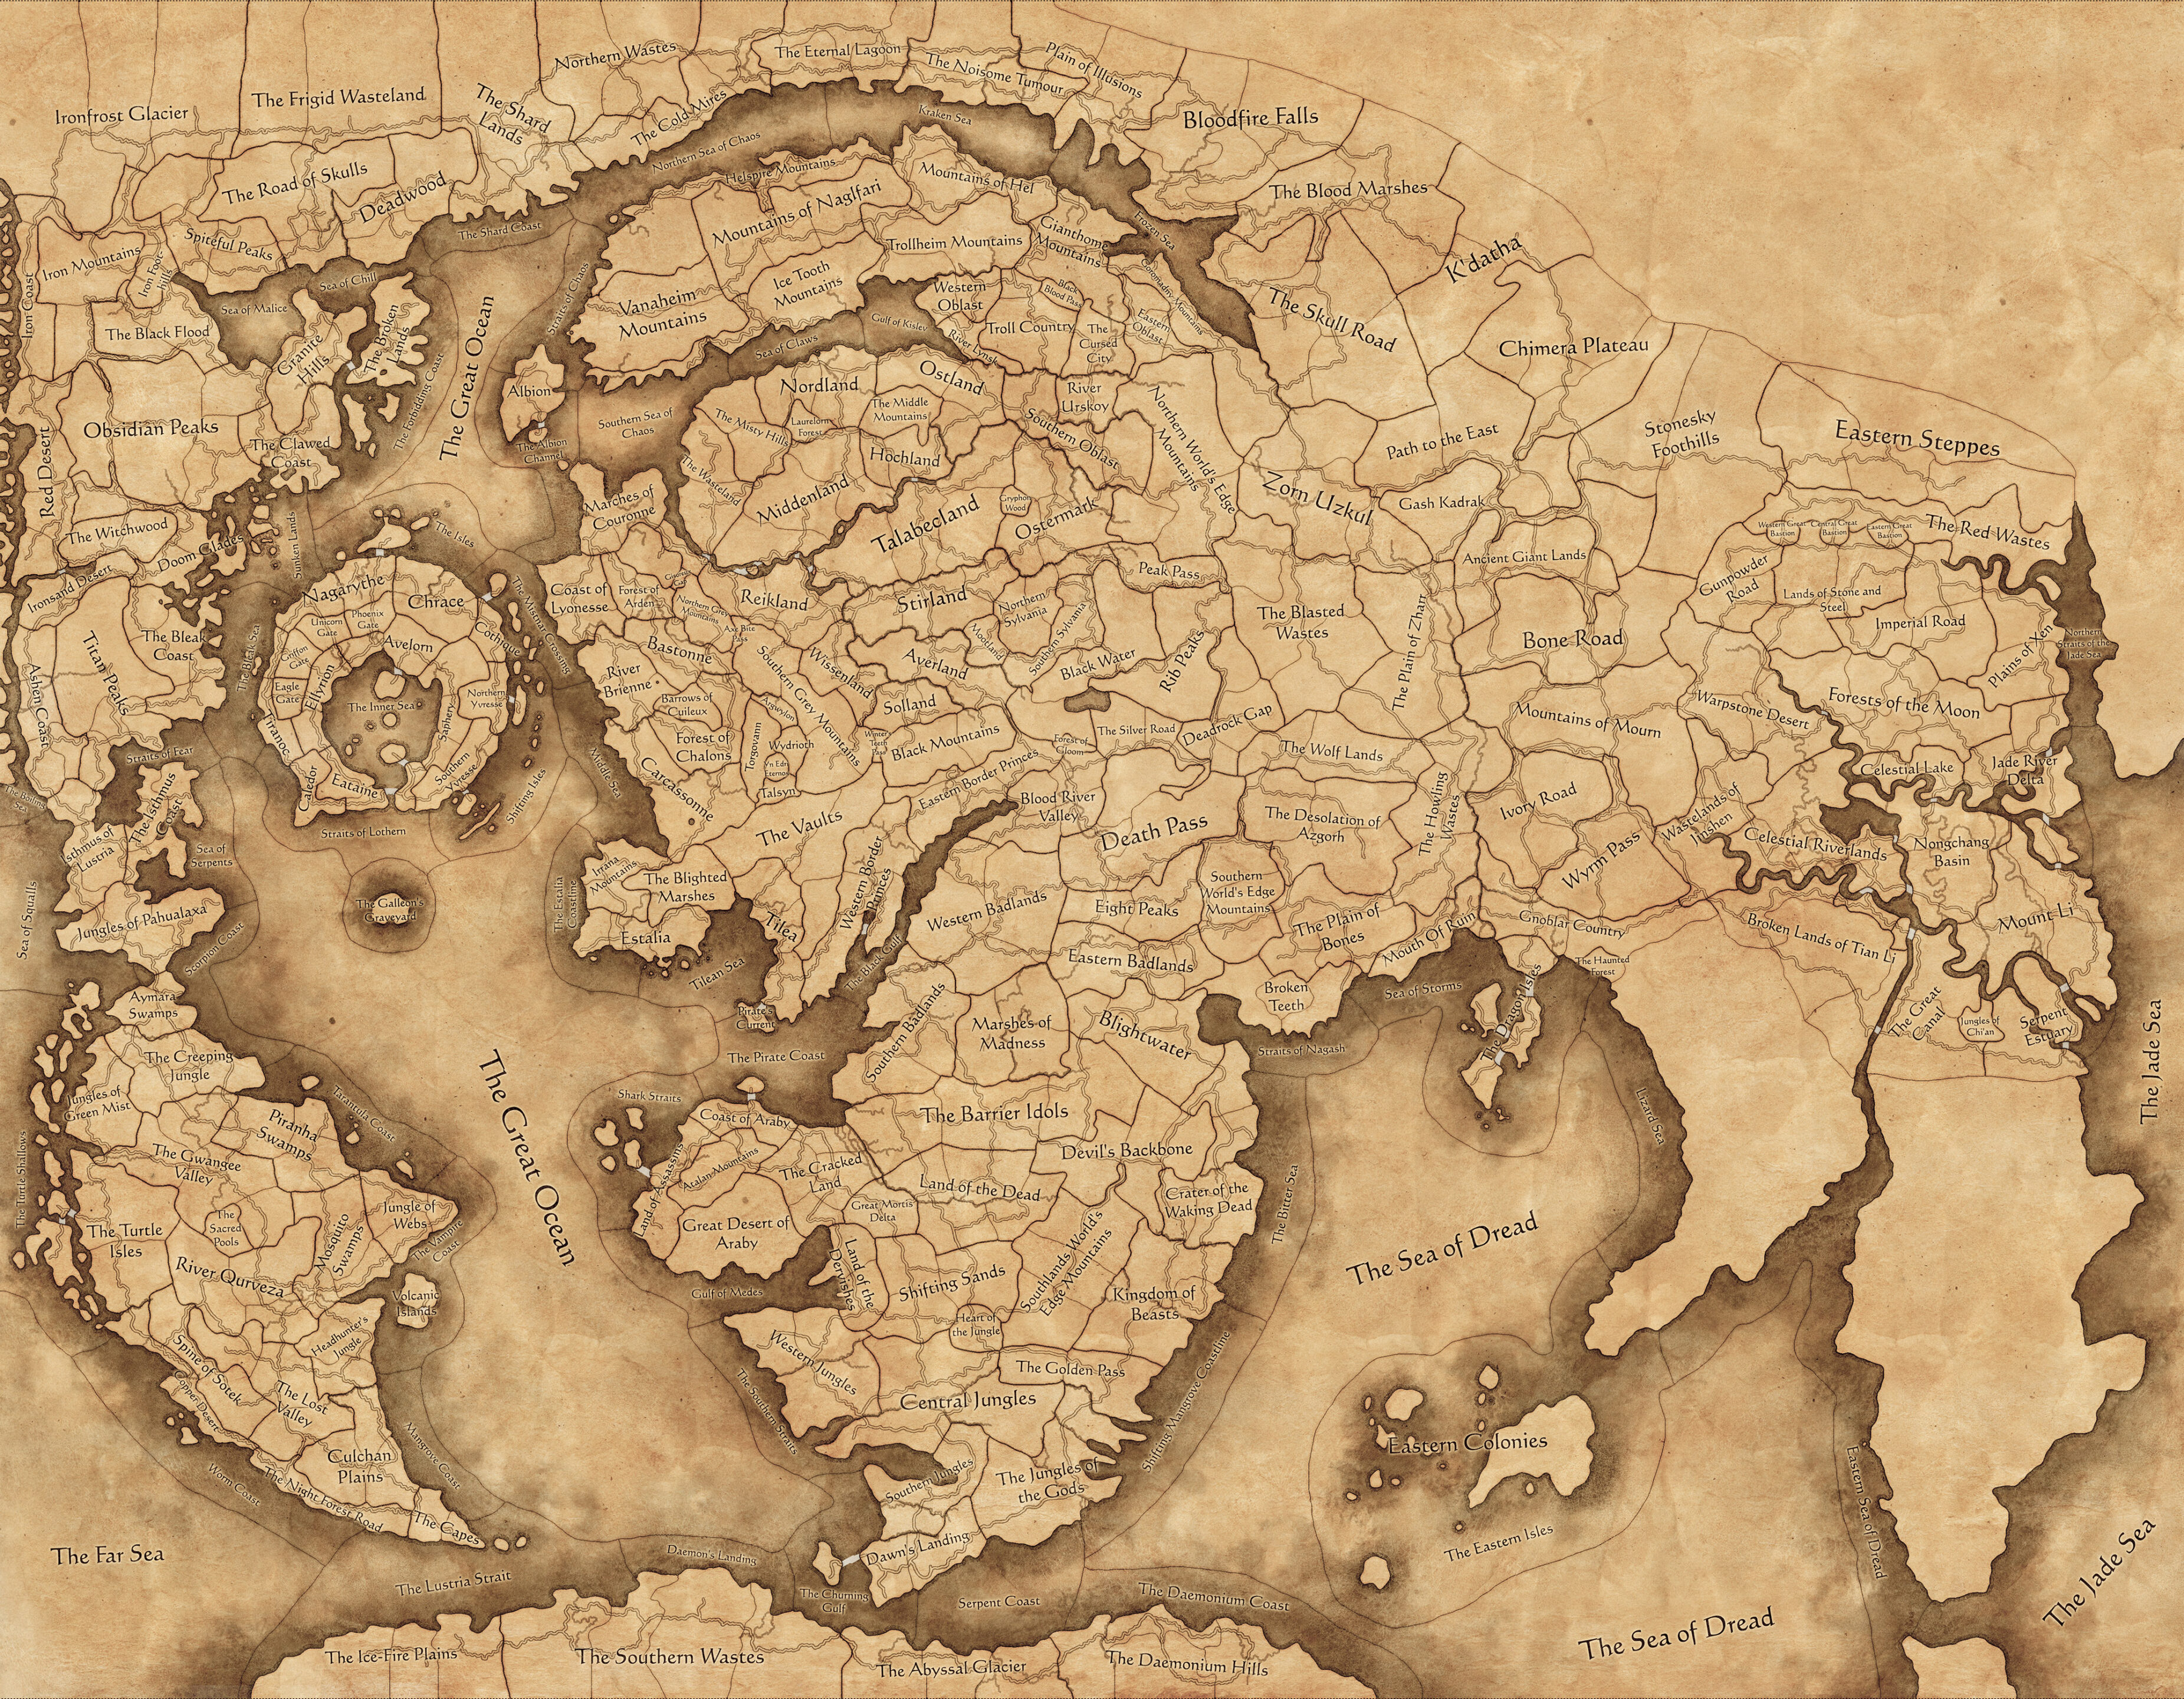 דימוי של המלחמה הכוללת: Warhammer III אימפריות אלמותיות מפה של מצב משחק, המשתרע על חלק גדול מהעולם Warhammer